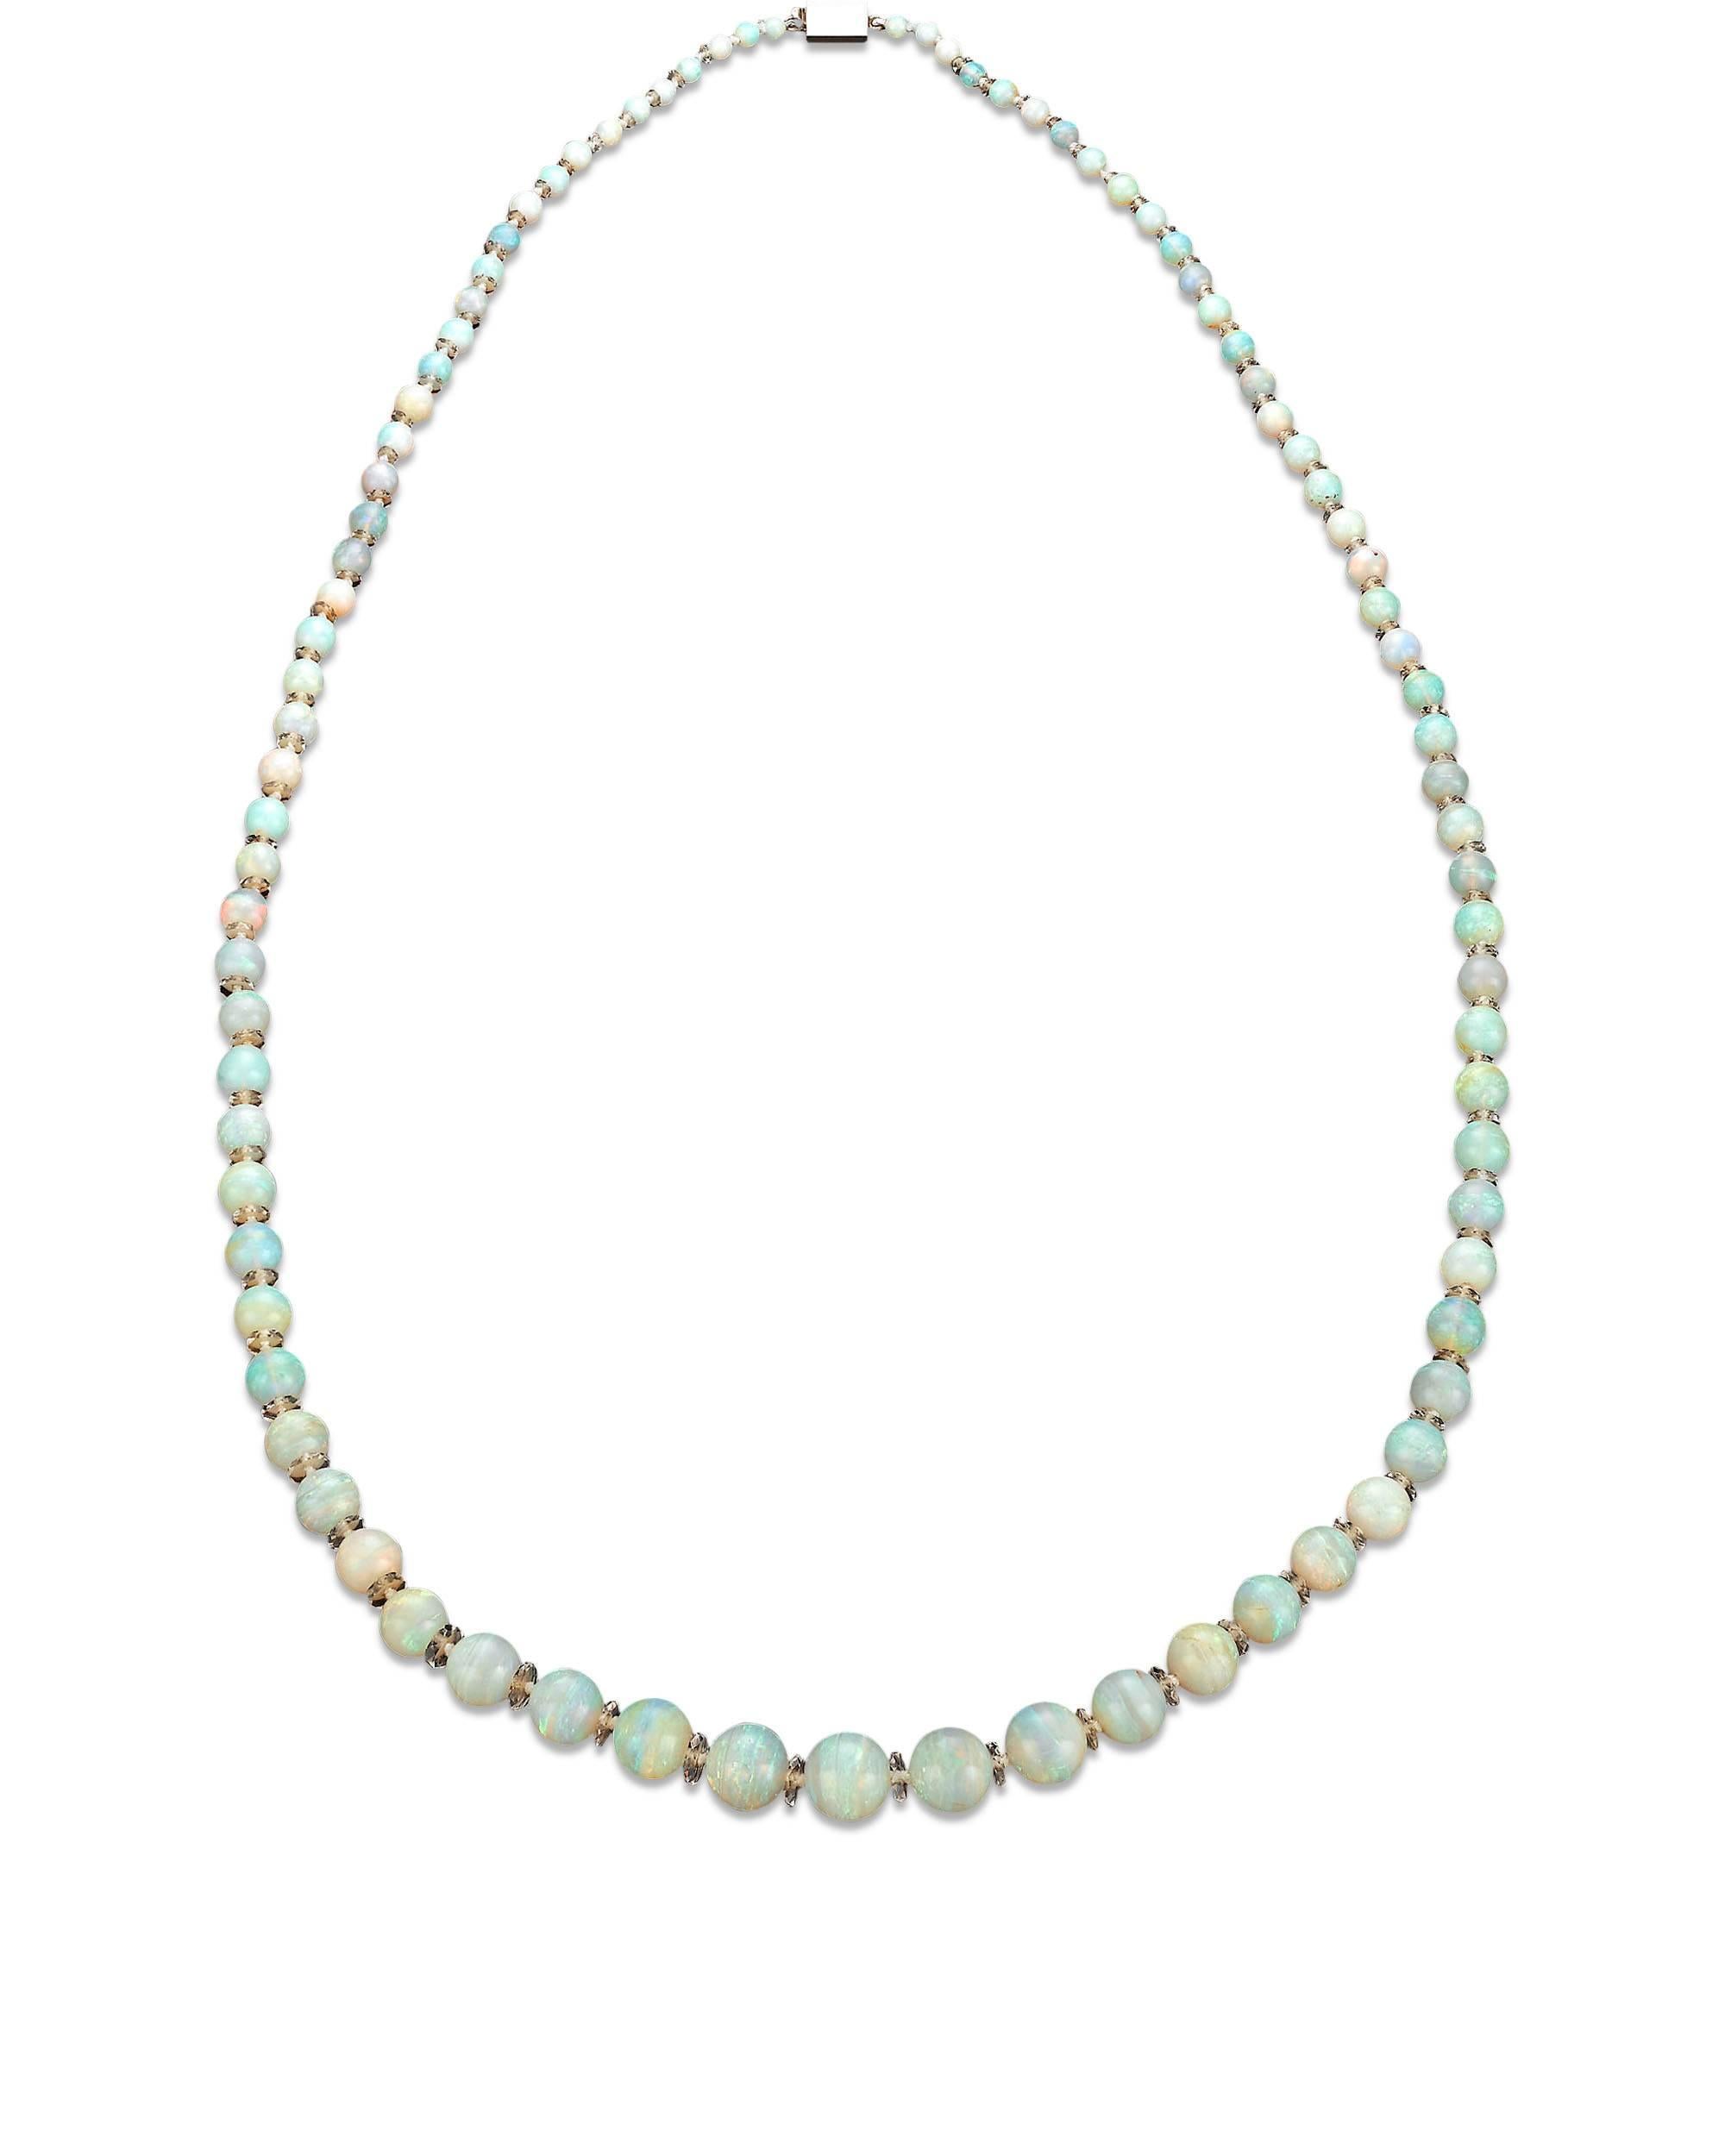 Quatre-vingt-neuf opales australiennes dansent avec la couleur dans ce collier étonnant. Mesurant de 4 mm à 11 mm, ces pierres précieuses envoûtantes pèsent environ 250 carats au total et sont séparées par d'élégantes rondelles de cristal de roche.